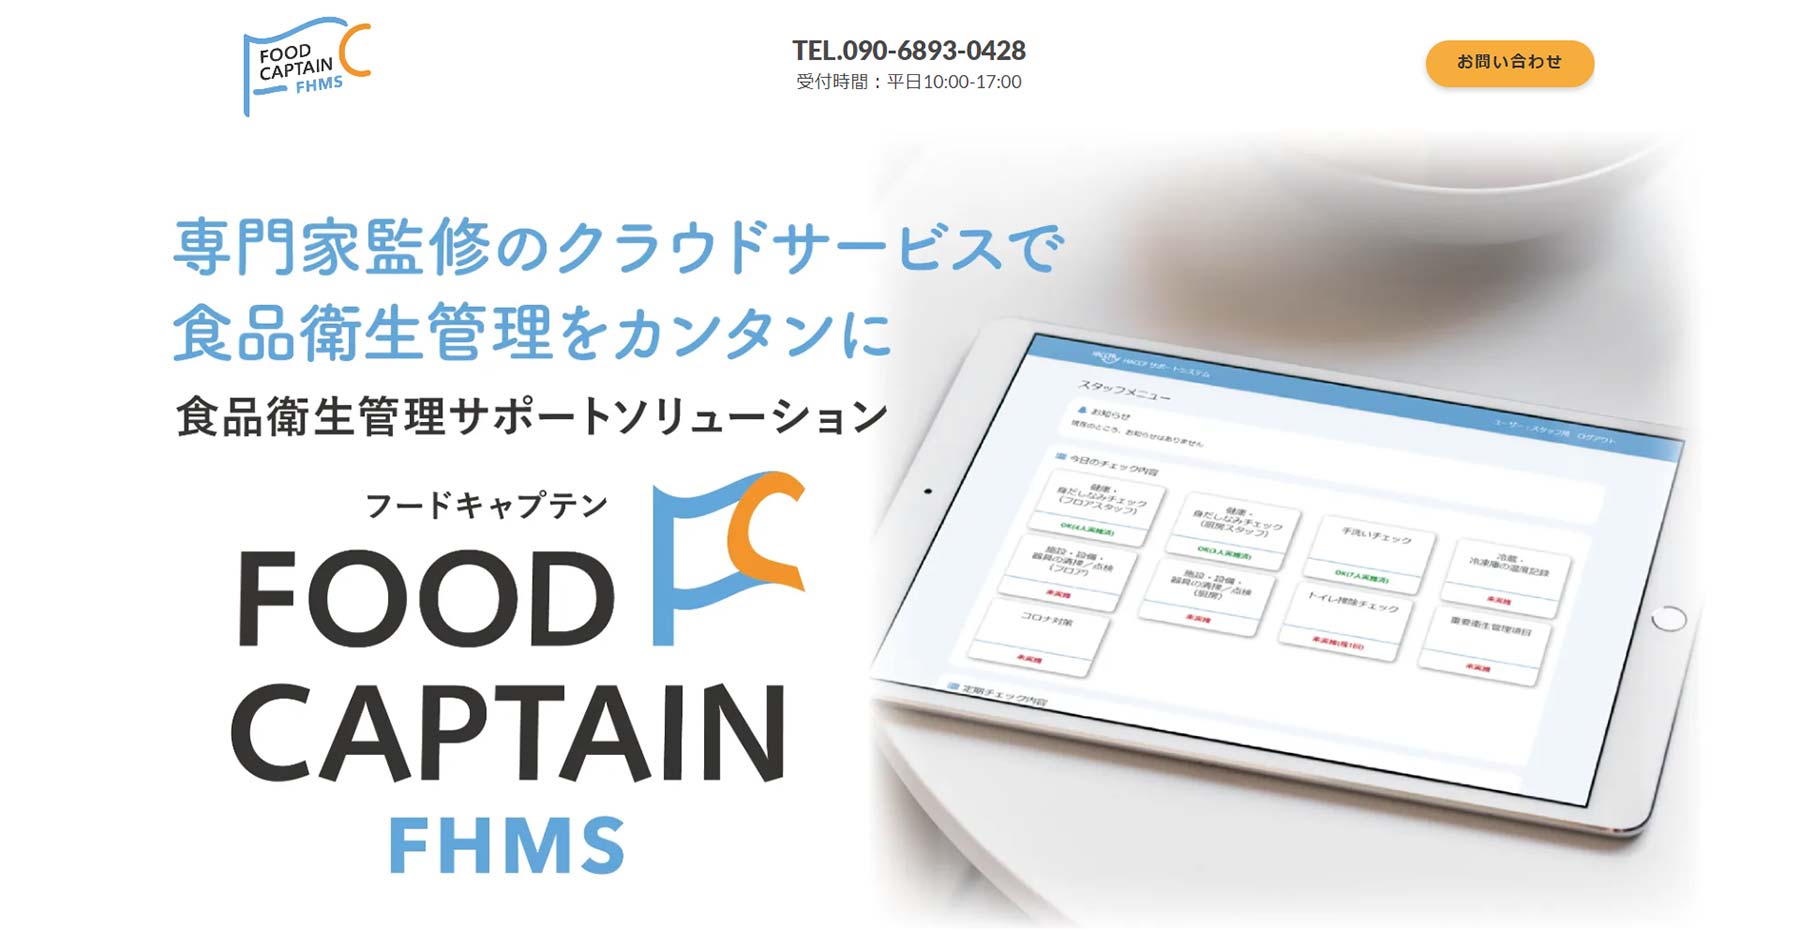 FOOD CAPTAIN - FHMS公式Webサイト